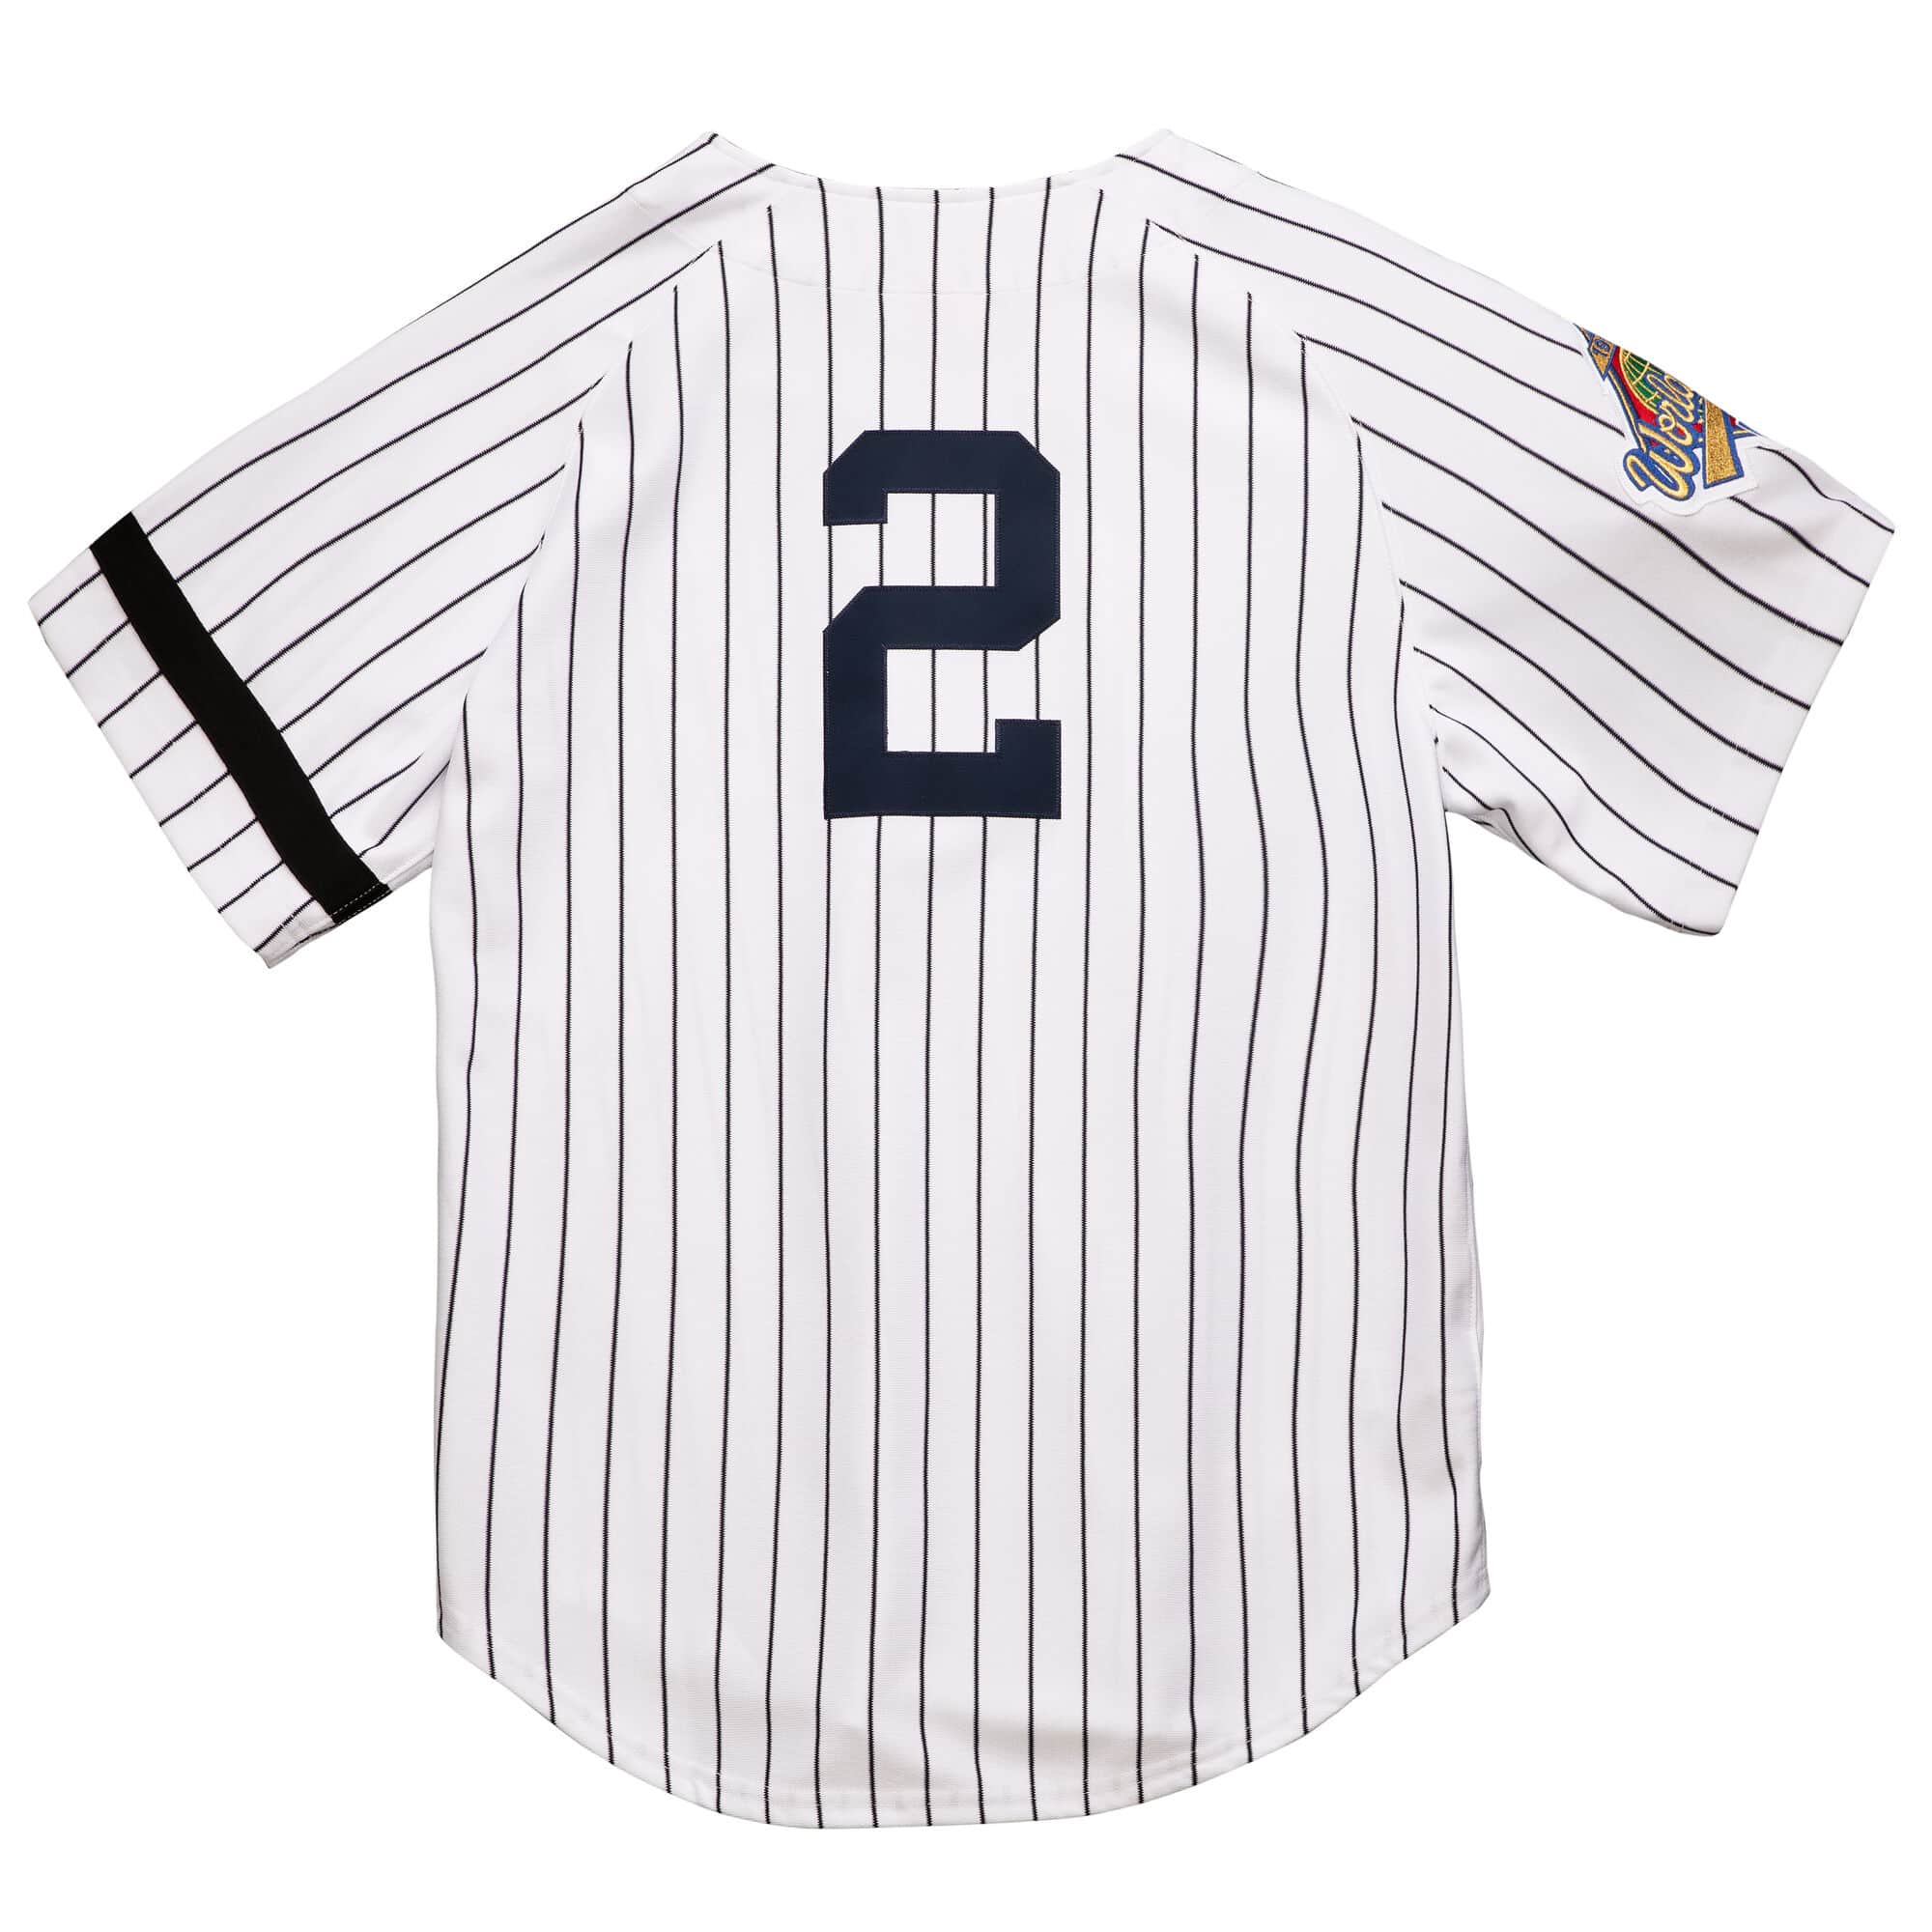 1996 Yankees 20th Anniversary Retrospective: Derek Jeter - Pinstripe Alley